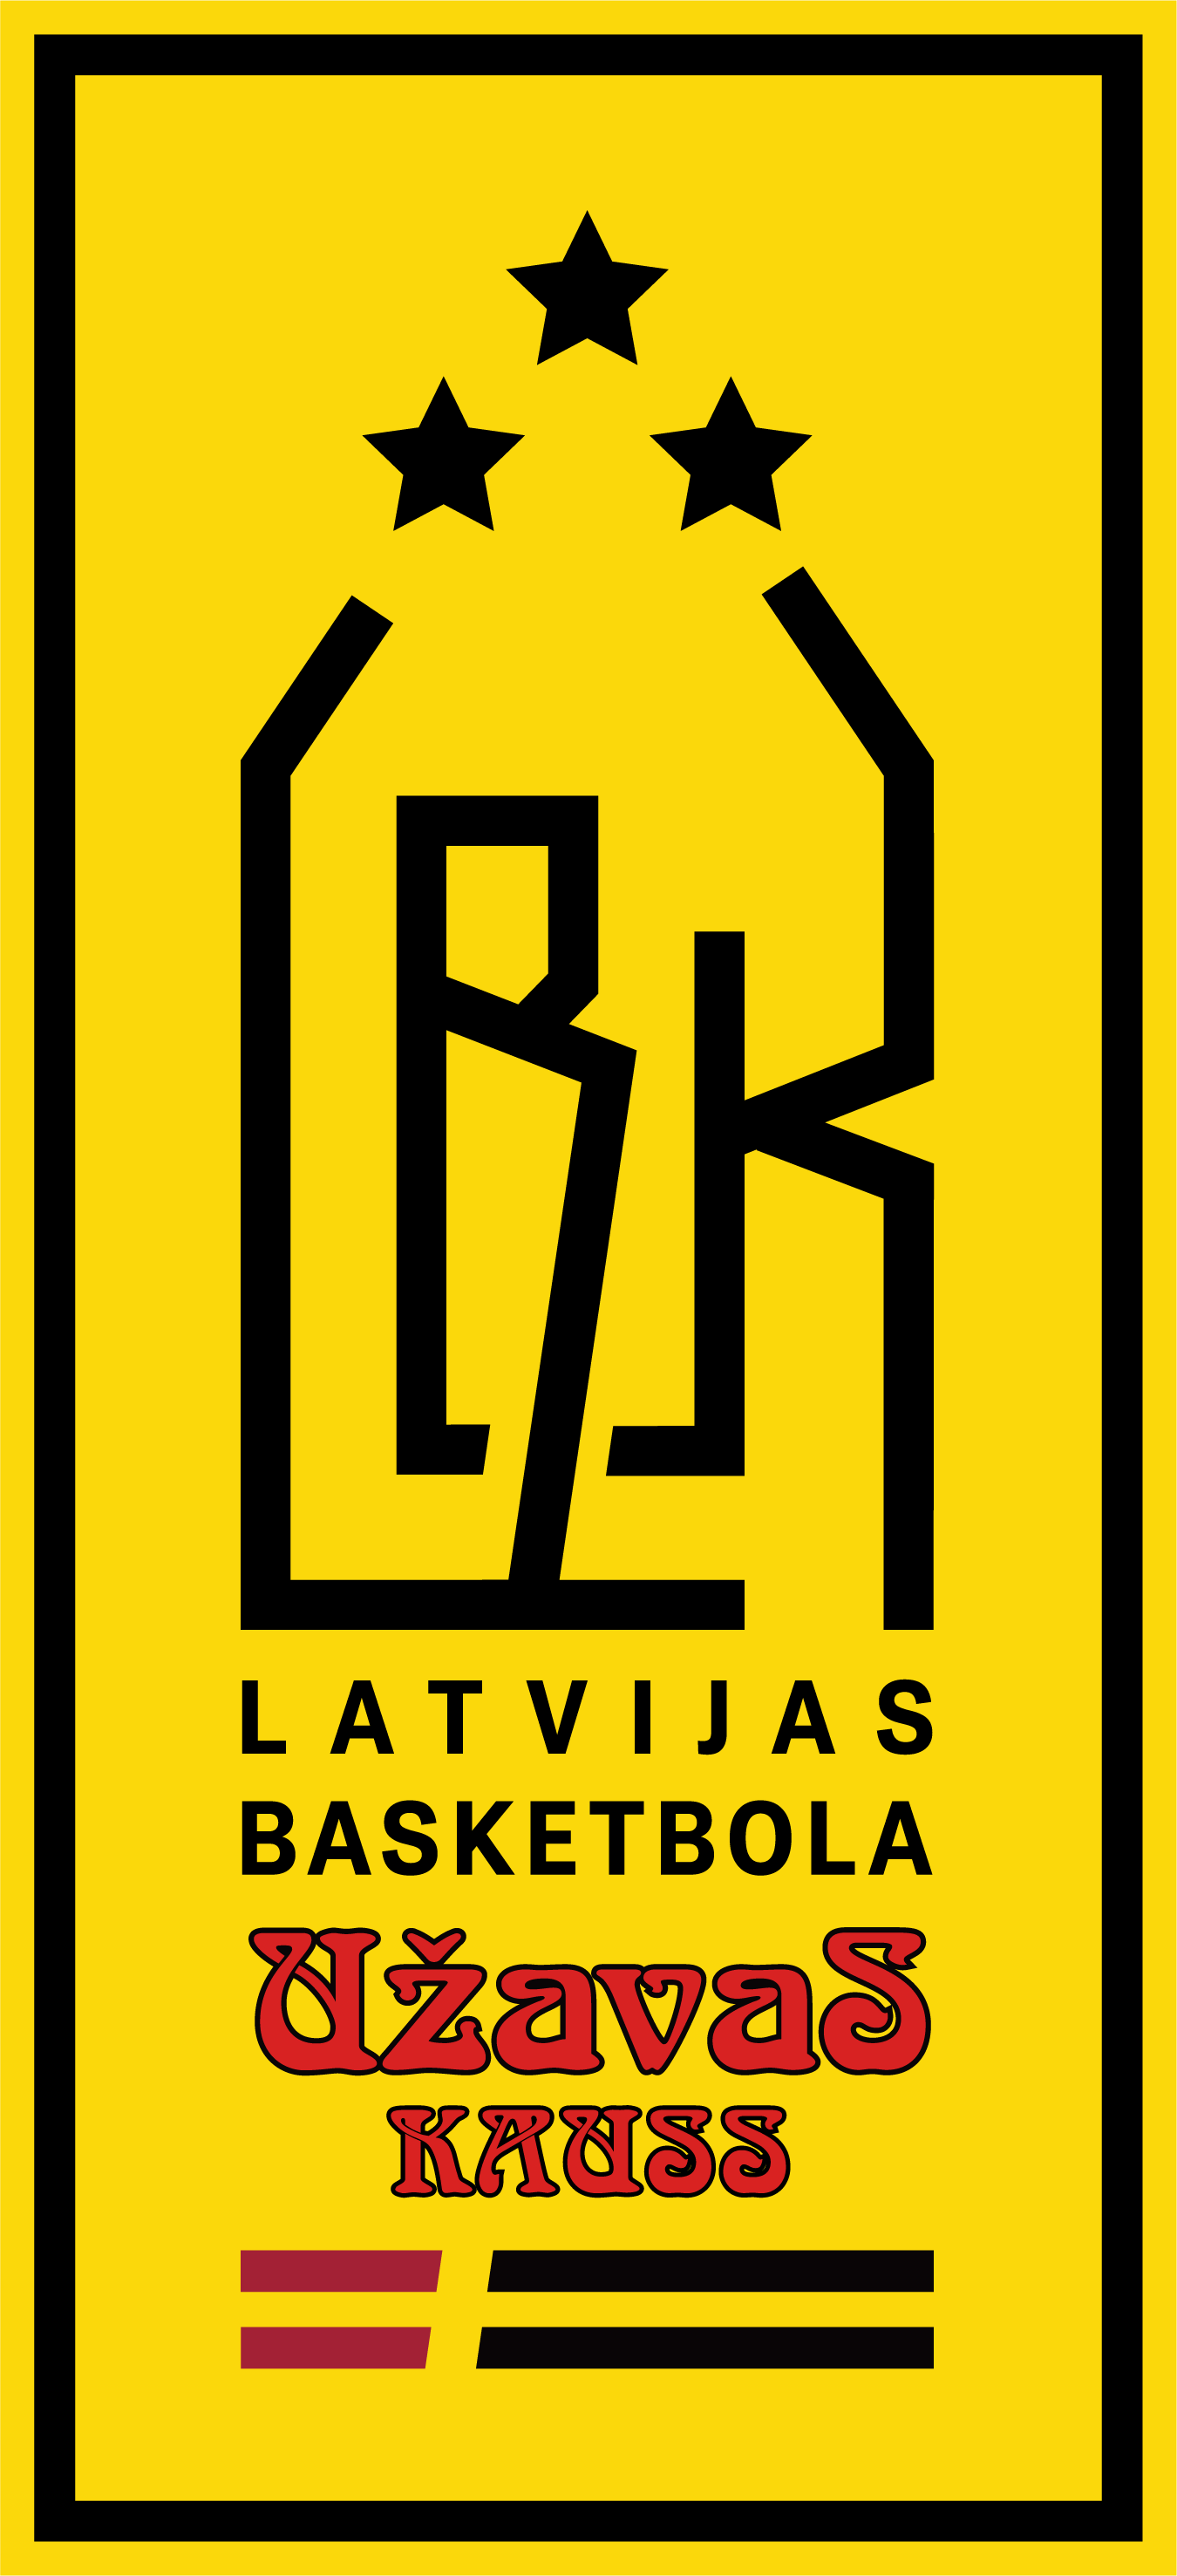 Latvijas Basketbola Užavas kausa ieguvēji – VEF RĪGA!